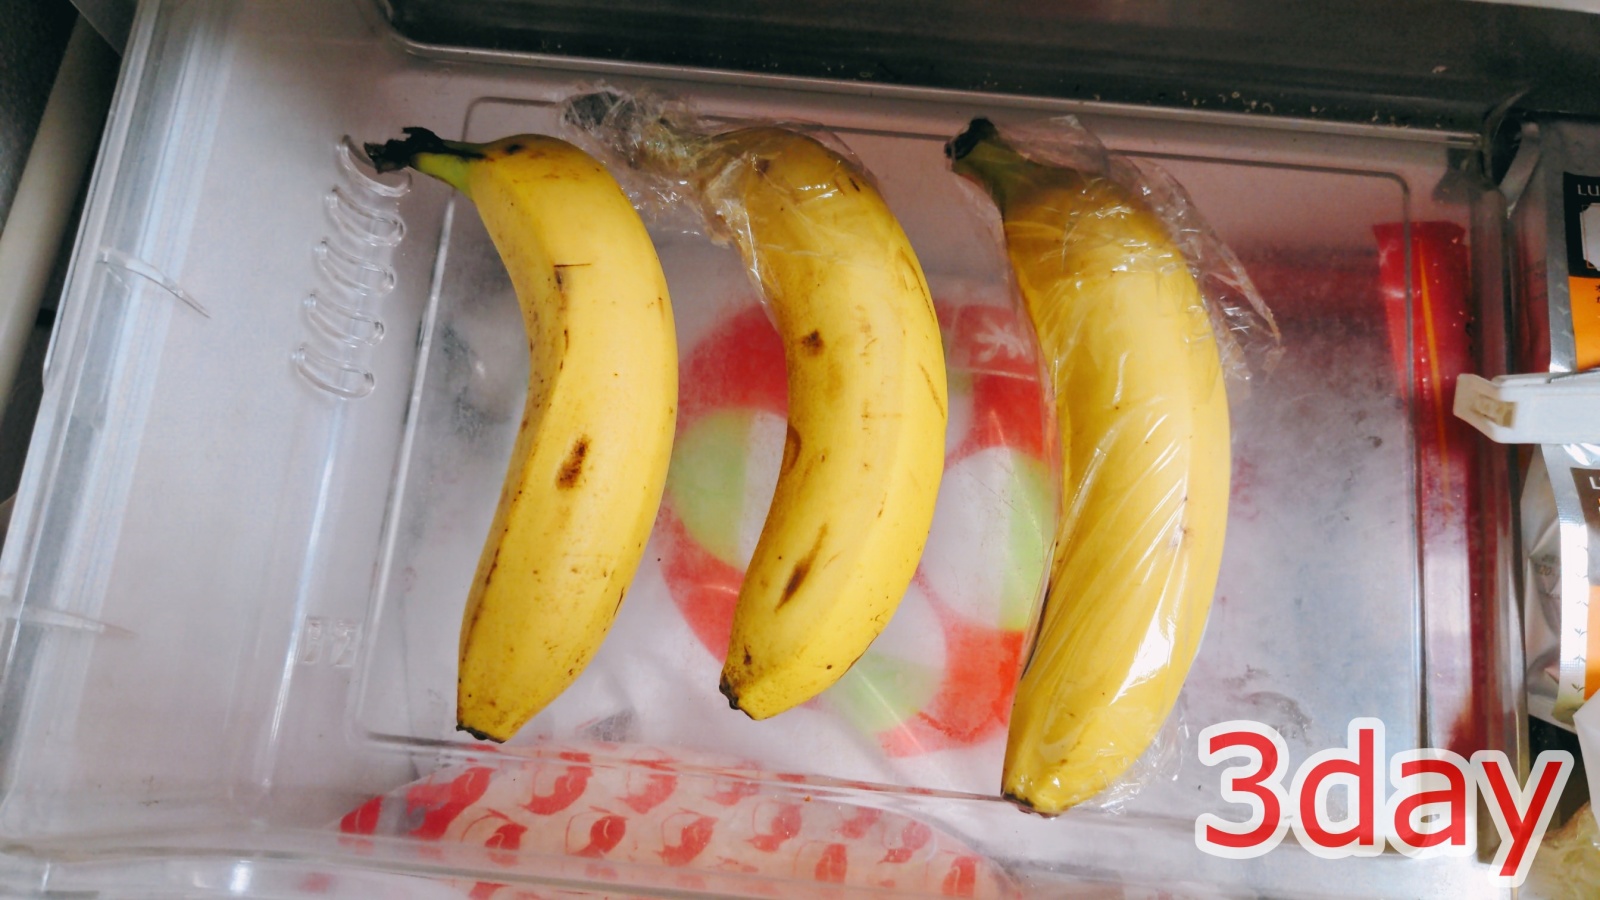 バナナ 黒く ならない 保存 方法